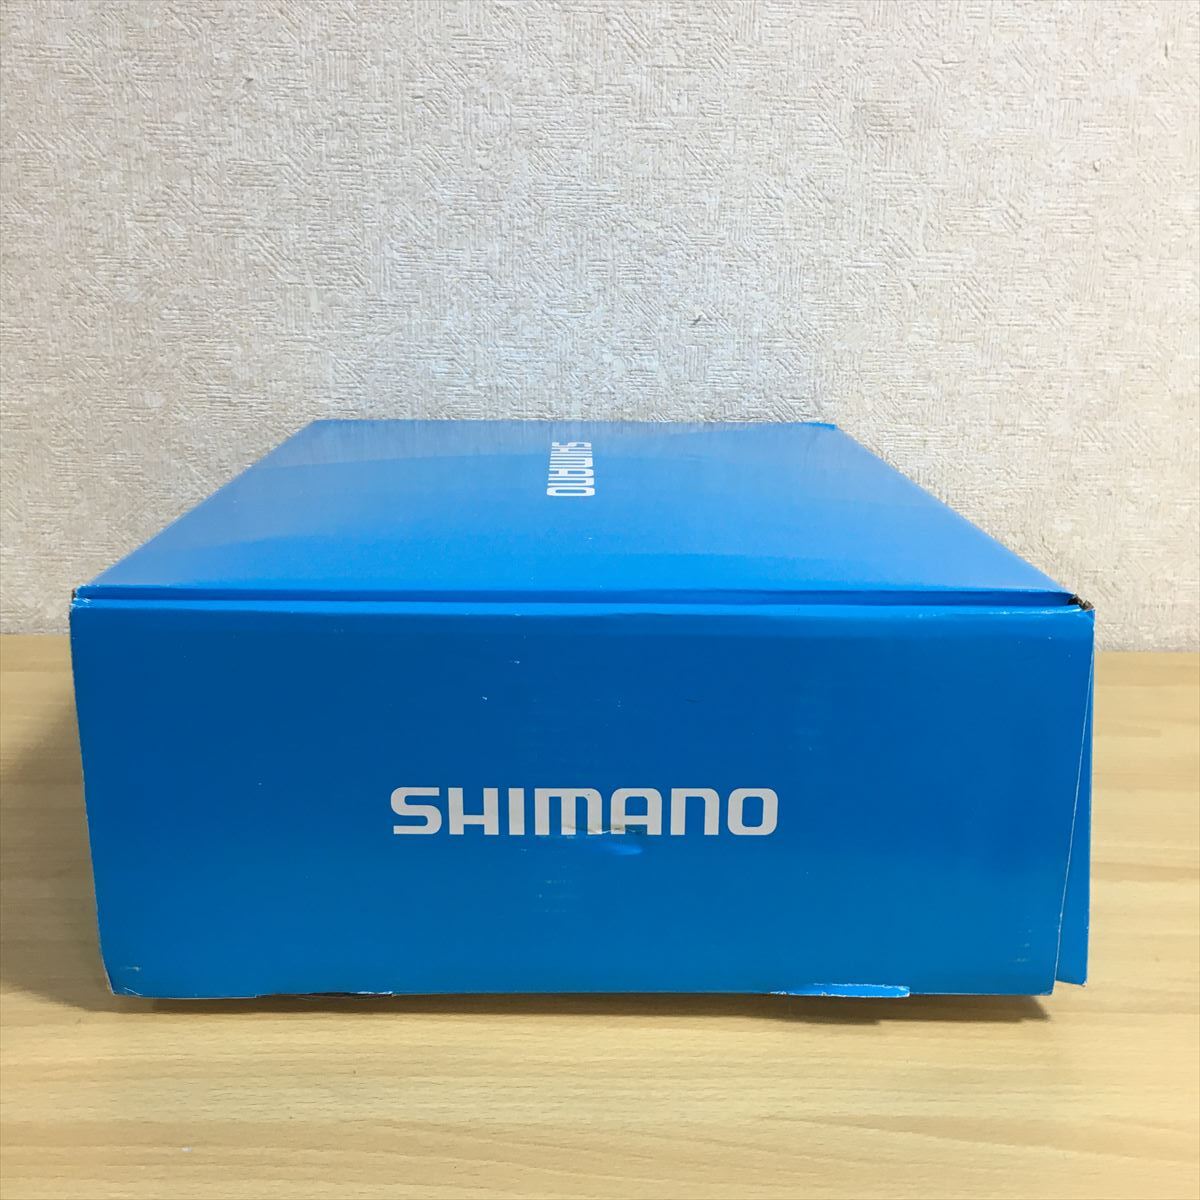 SHIMANO Shimano geo блокировка * тонкий забродный полукомбинезон средний сломан WA-061N размер . примерно размер LO пара размер L рыбалка инструмент нераспечатанный товар 3s5398